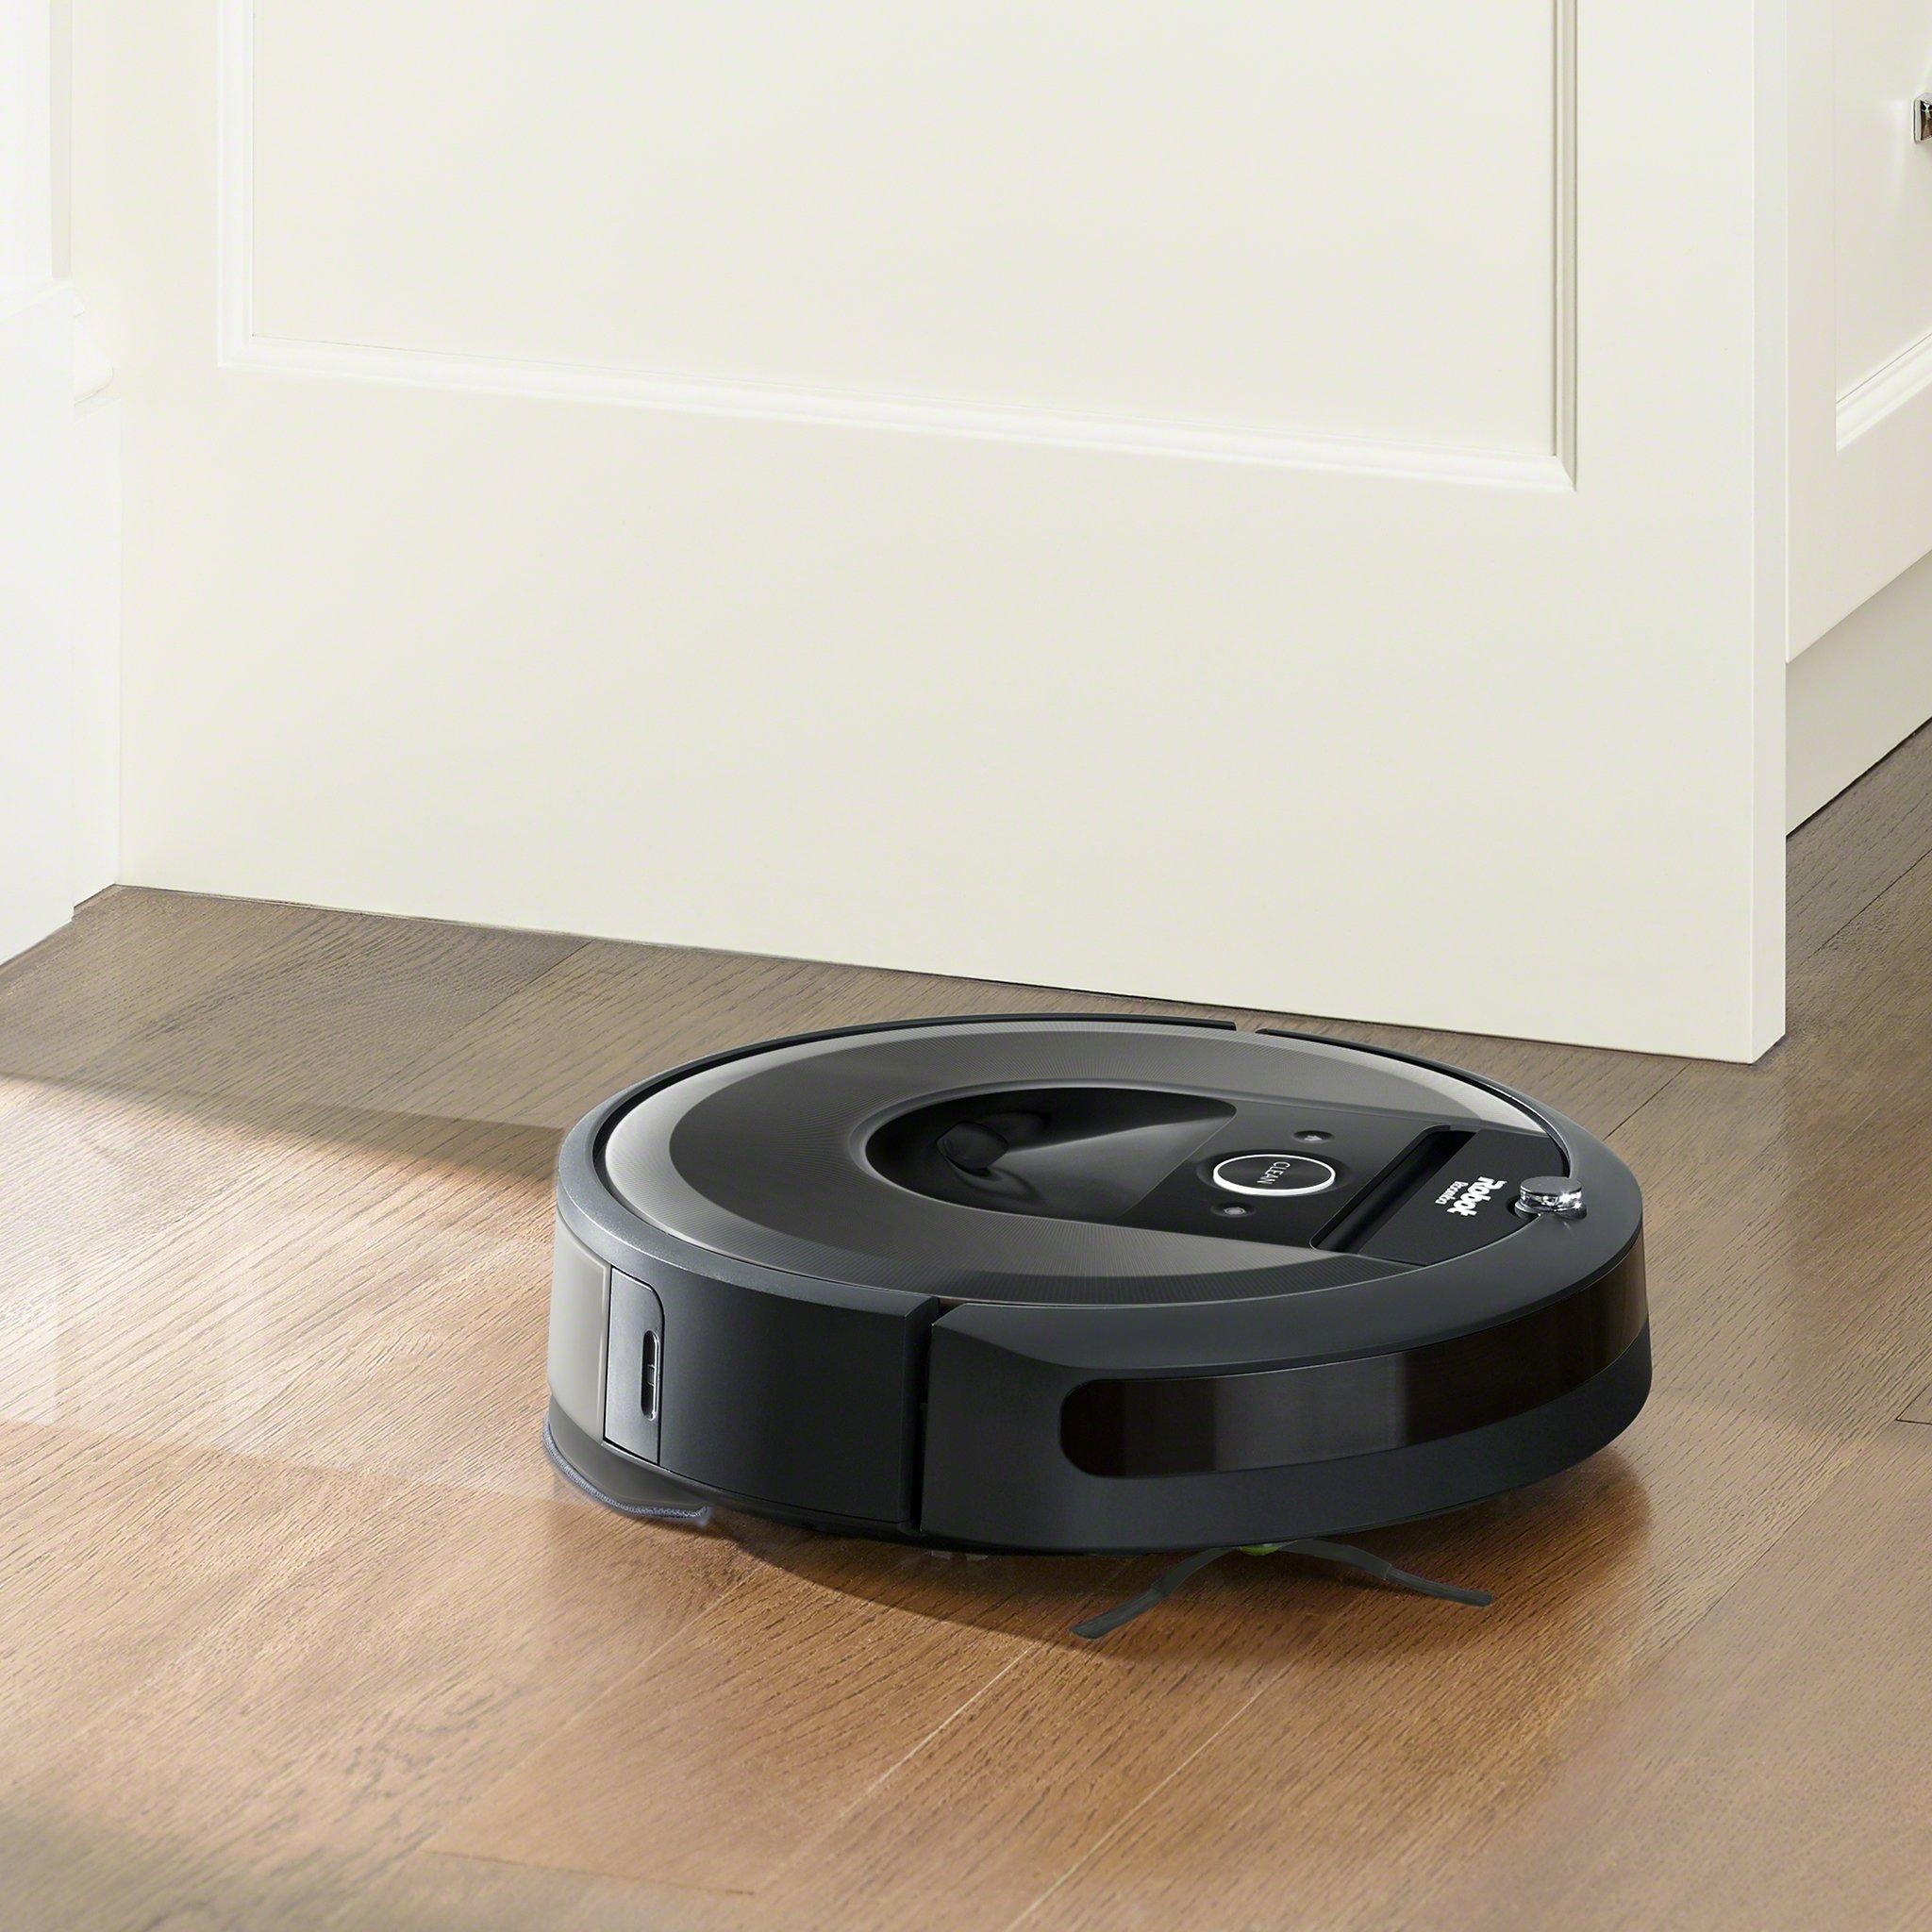 Acheter en ligne IROBOT Roomba Combo i8 à bons prix et en toute sécurité 